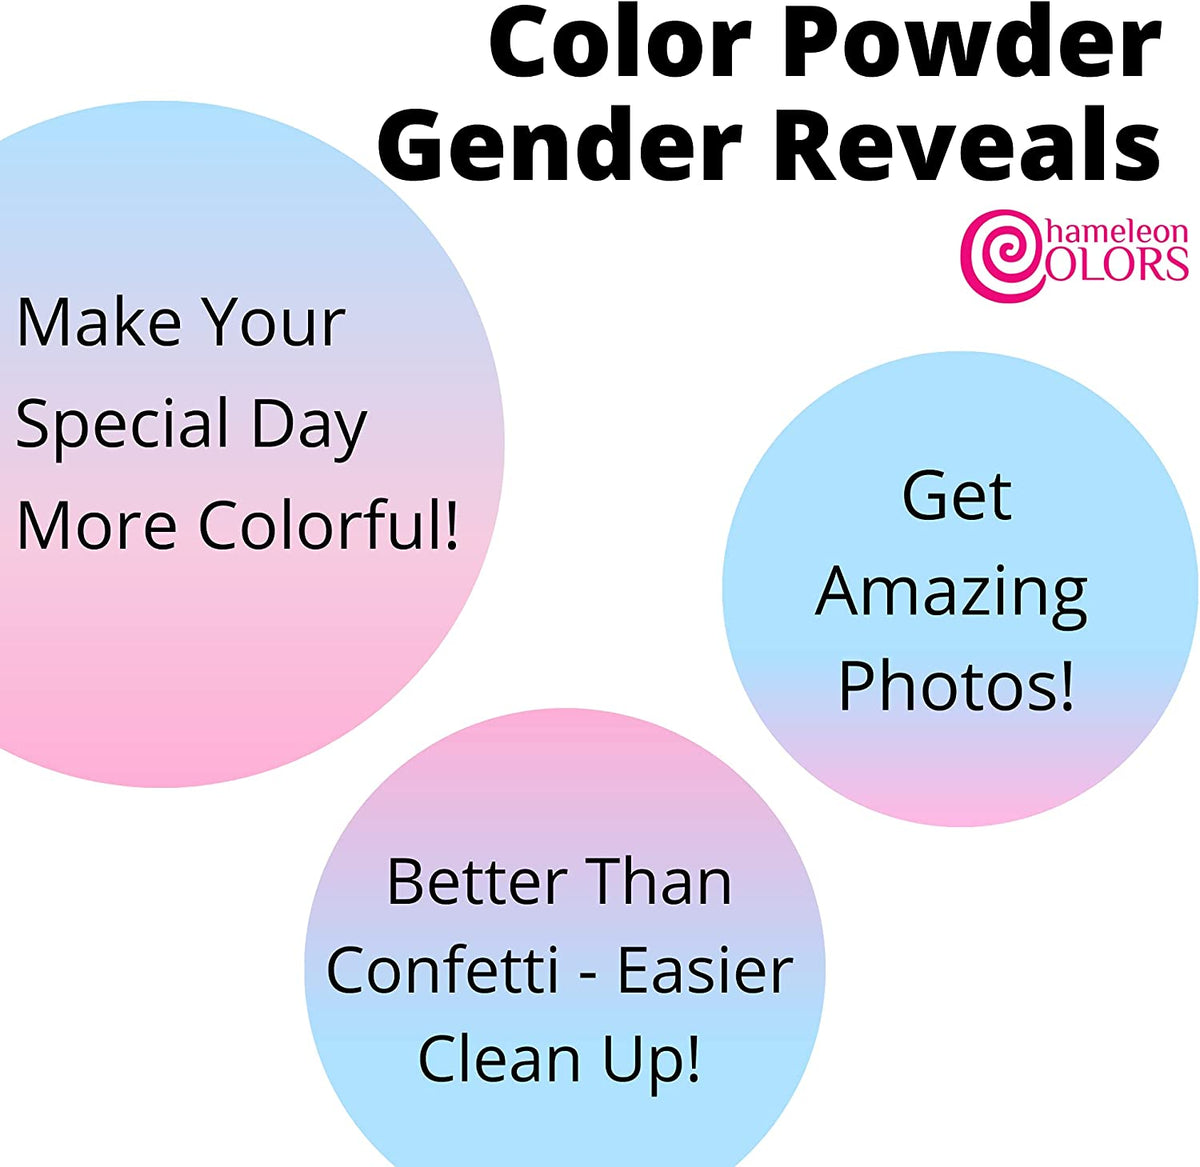 Gender Reveal Burnout Kit